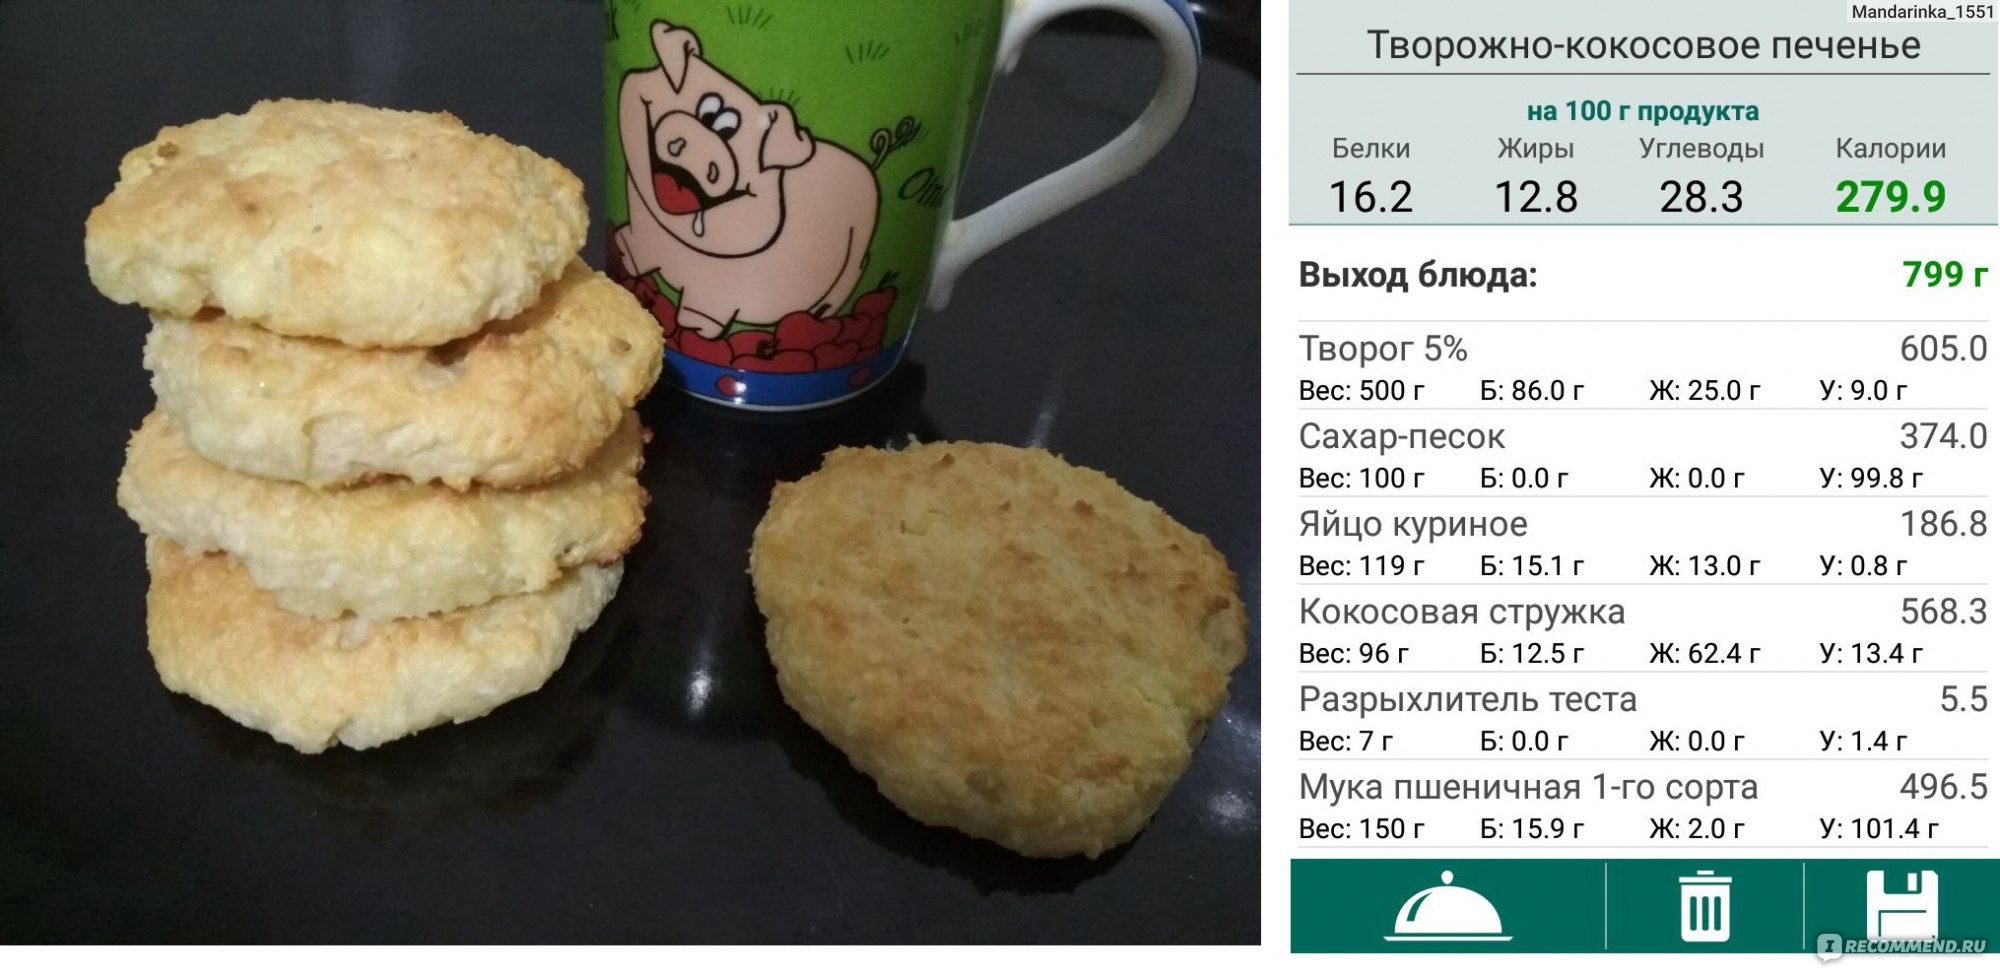 Сырники с рисовой мукой - 7 пп рецептов с пошаговыми фото